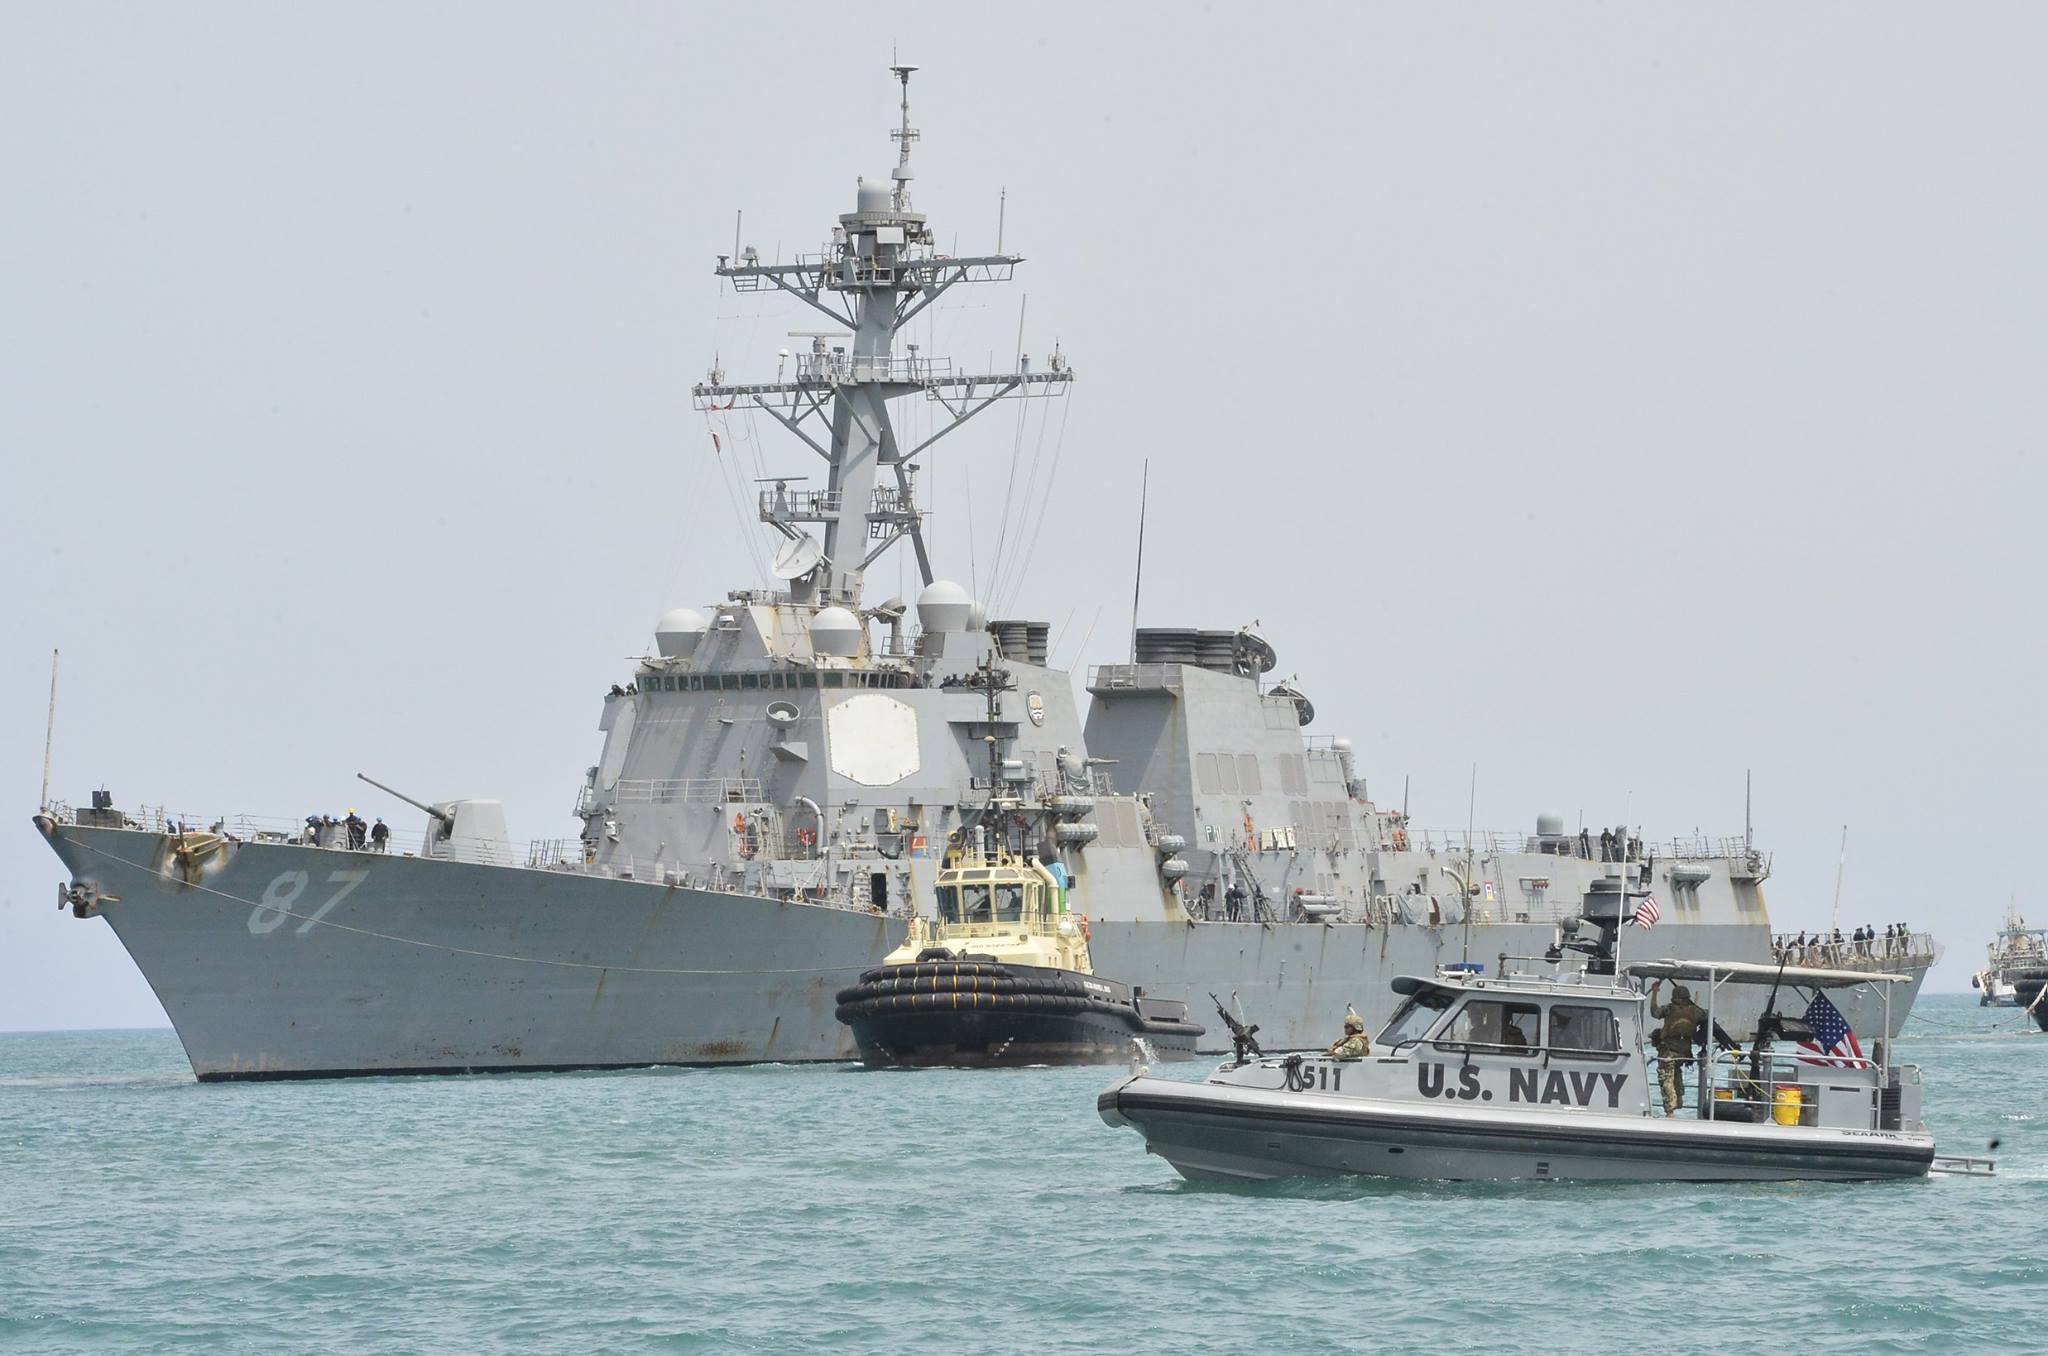 ΗΠΑ: Ελεύθερο το δεξαμενόπλοιο που κατελήφθη στην Υεμένη έπειτα από επέμβαση του Πολεμικού Ναυτικού